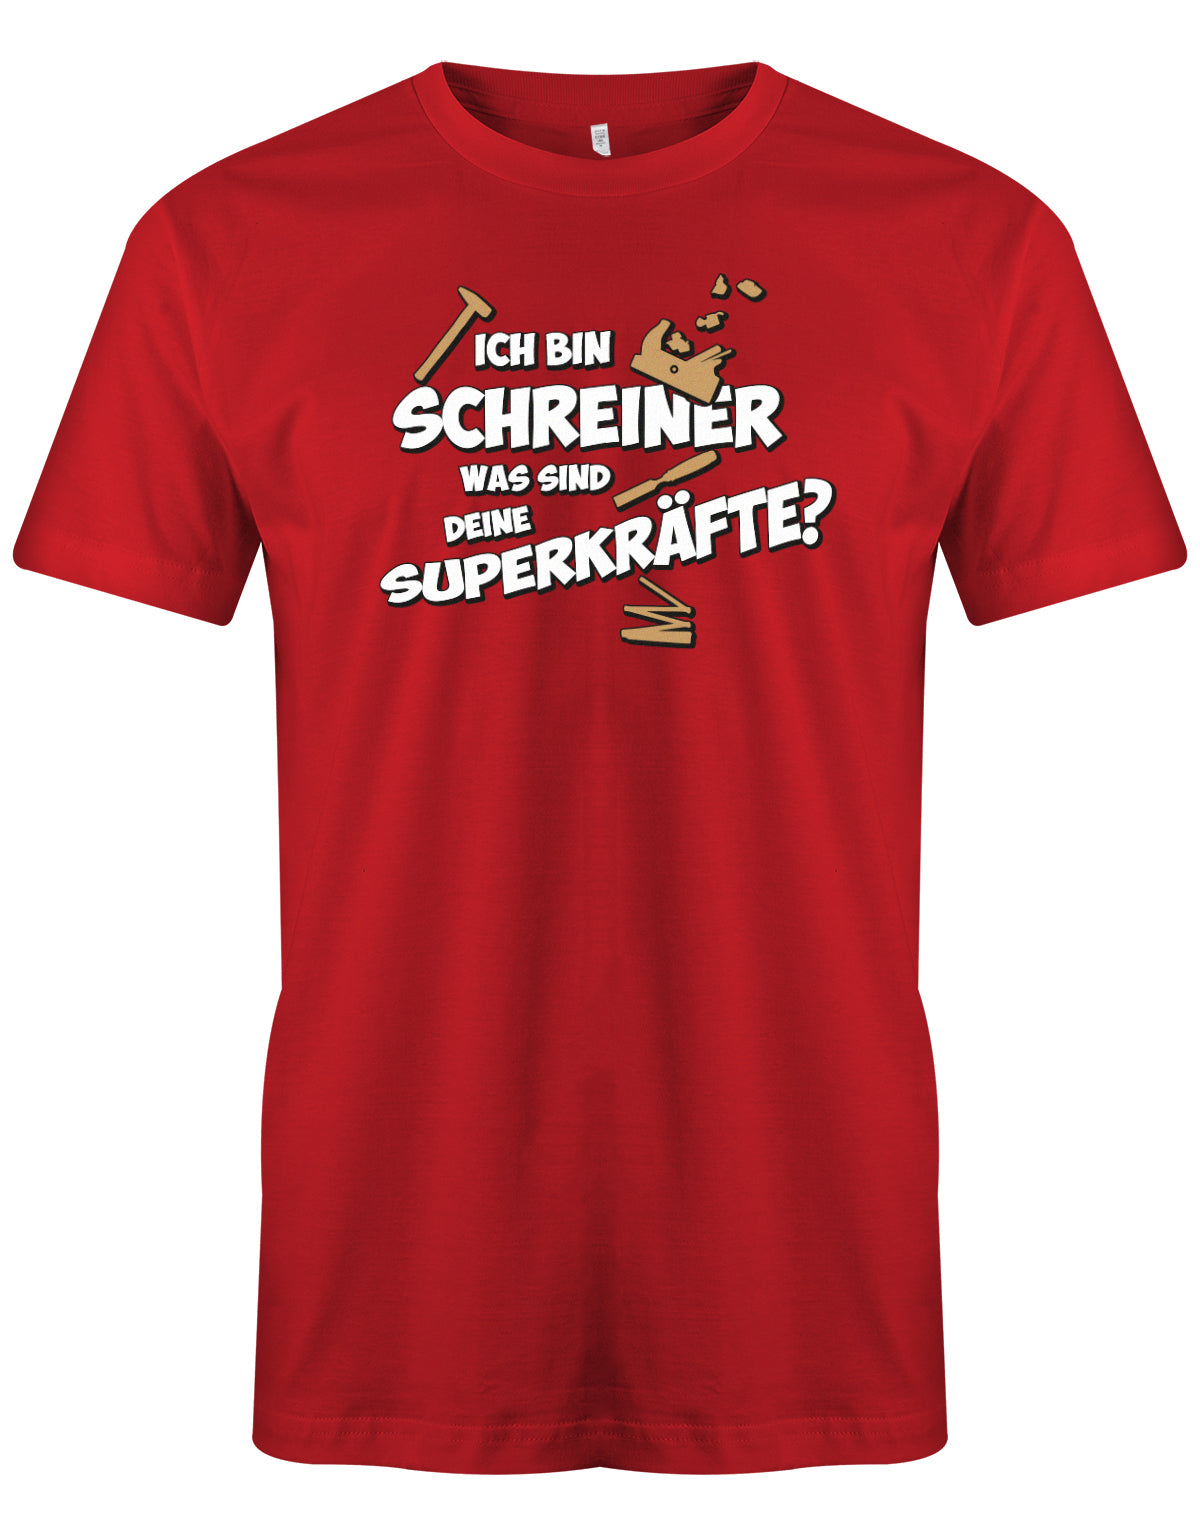 Schreiner und Tischler Shirt. Männer Shirt bedruckt mit: Ich bin Schreiner was sind deine Superkräfte? Rot